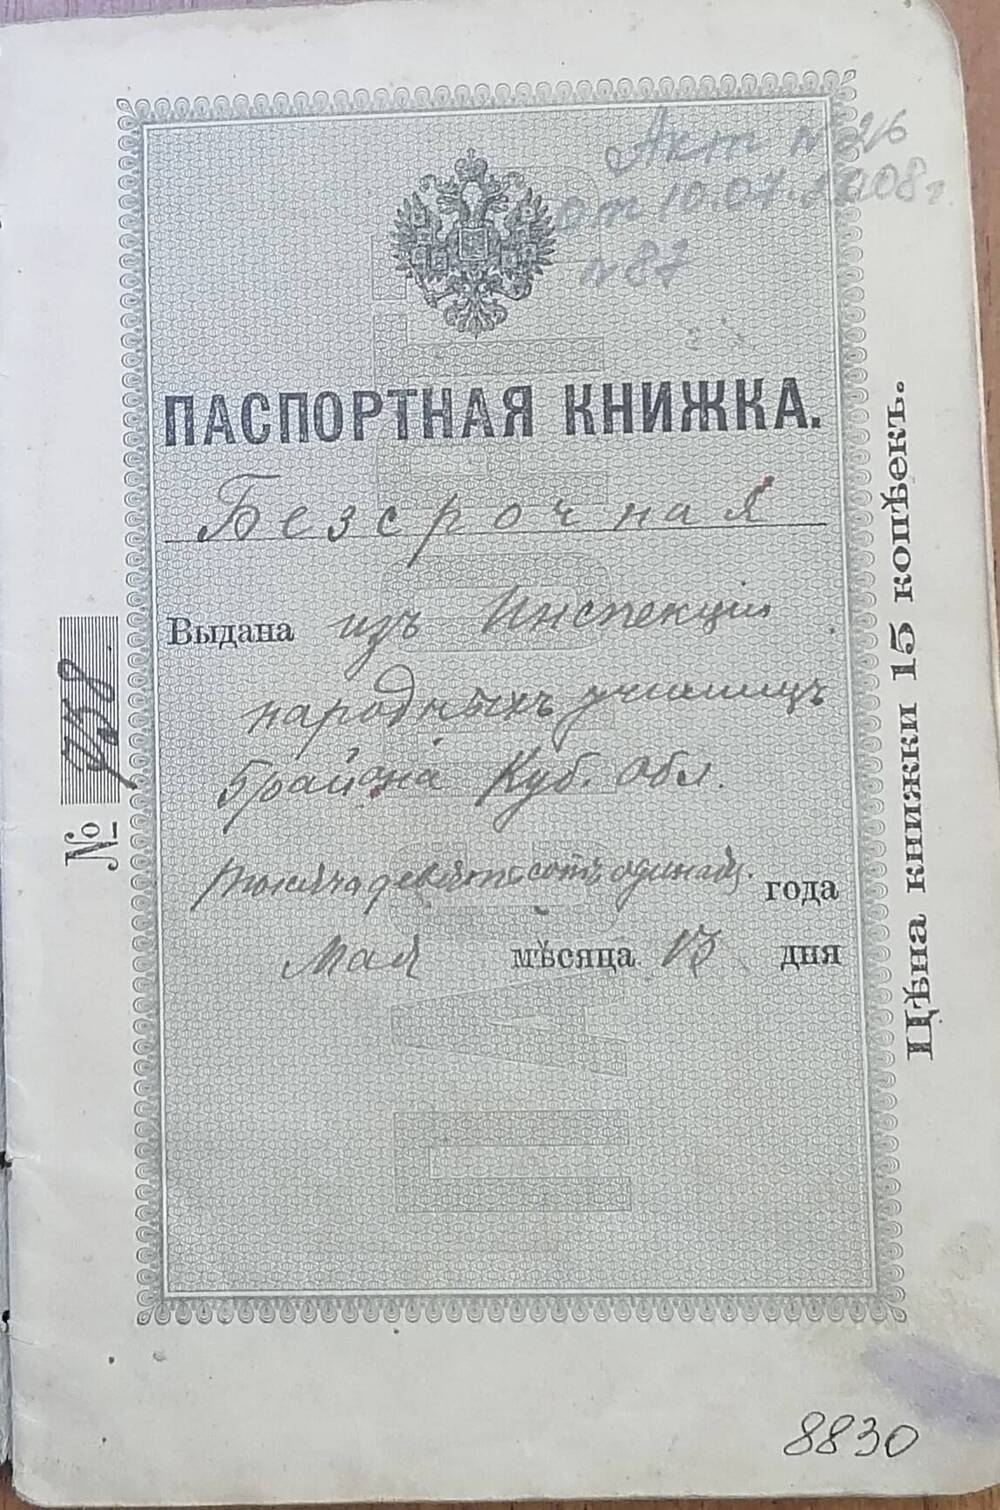 Книжка паспортная бессрочная № 738 Матюцкого Ивана Петровича